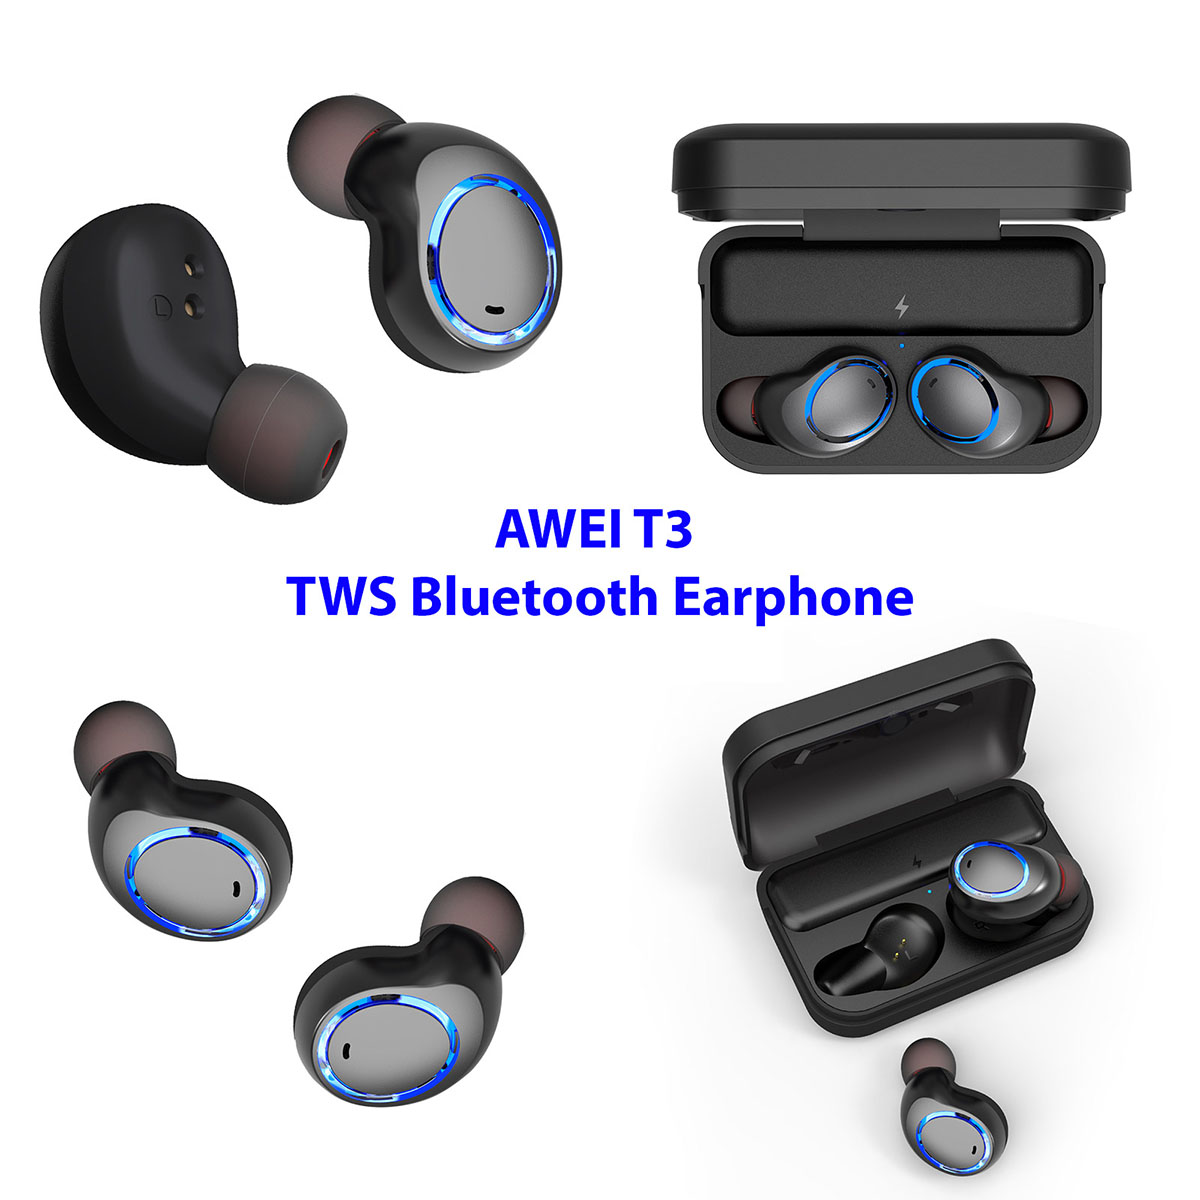 Гарнитура (наушники с микрофоном) беспроводная, AWEI T3 TWS Bluetooth Earphone цвет черный.